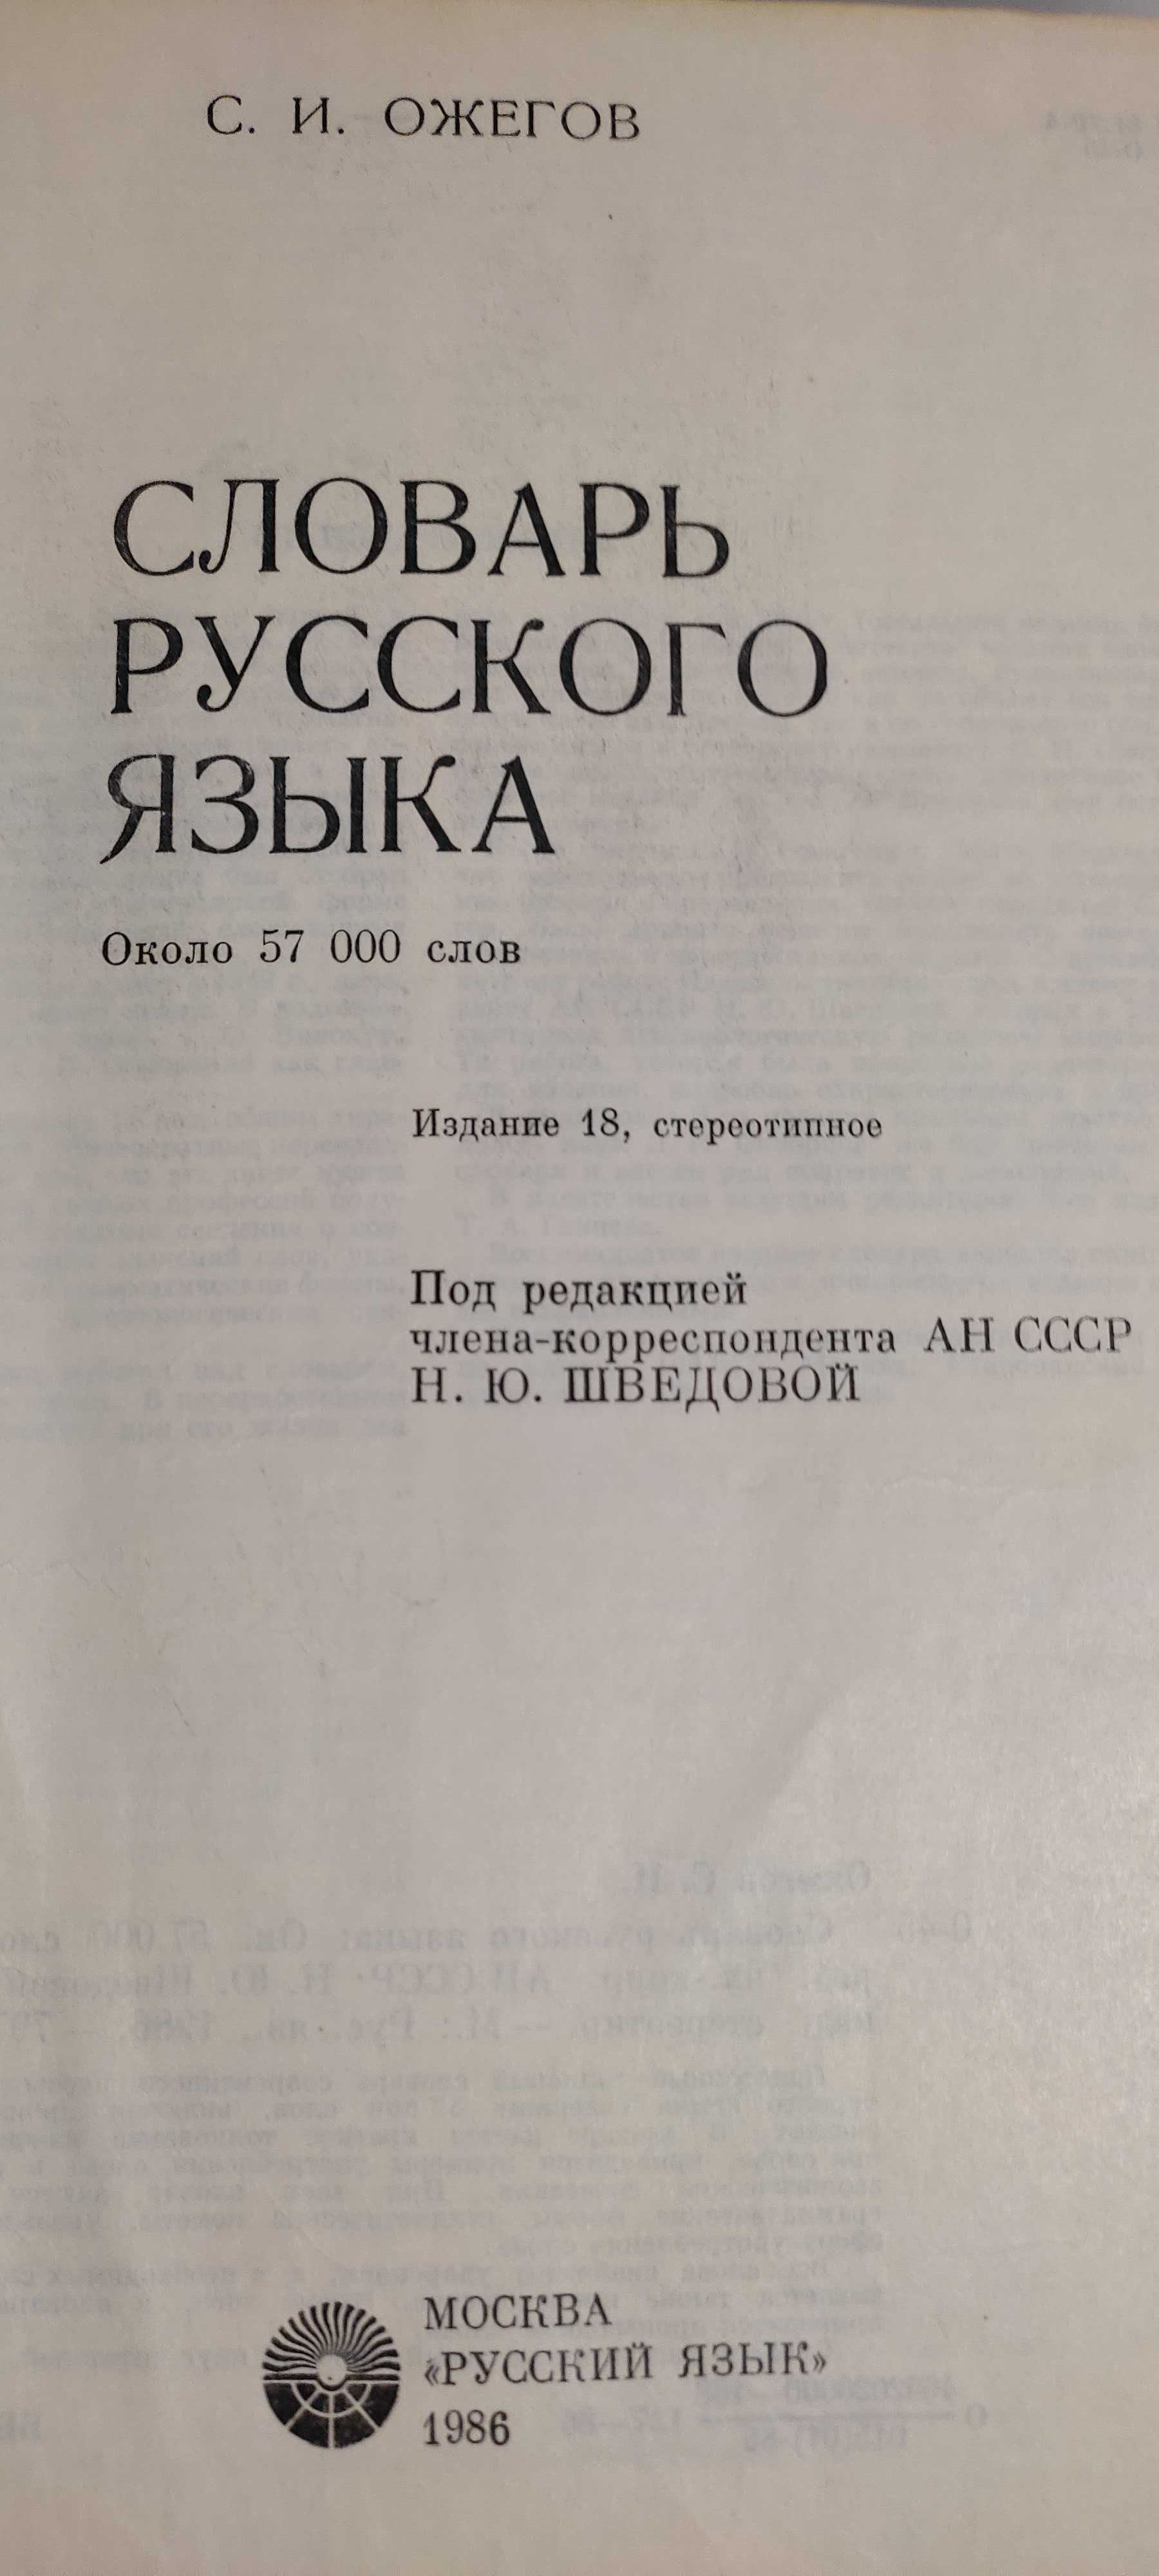 Словарь русского языка создан советским лингвистом С. И. Ожеговым.